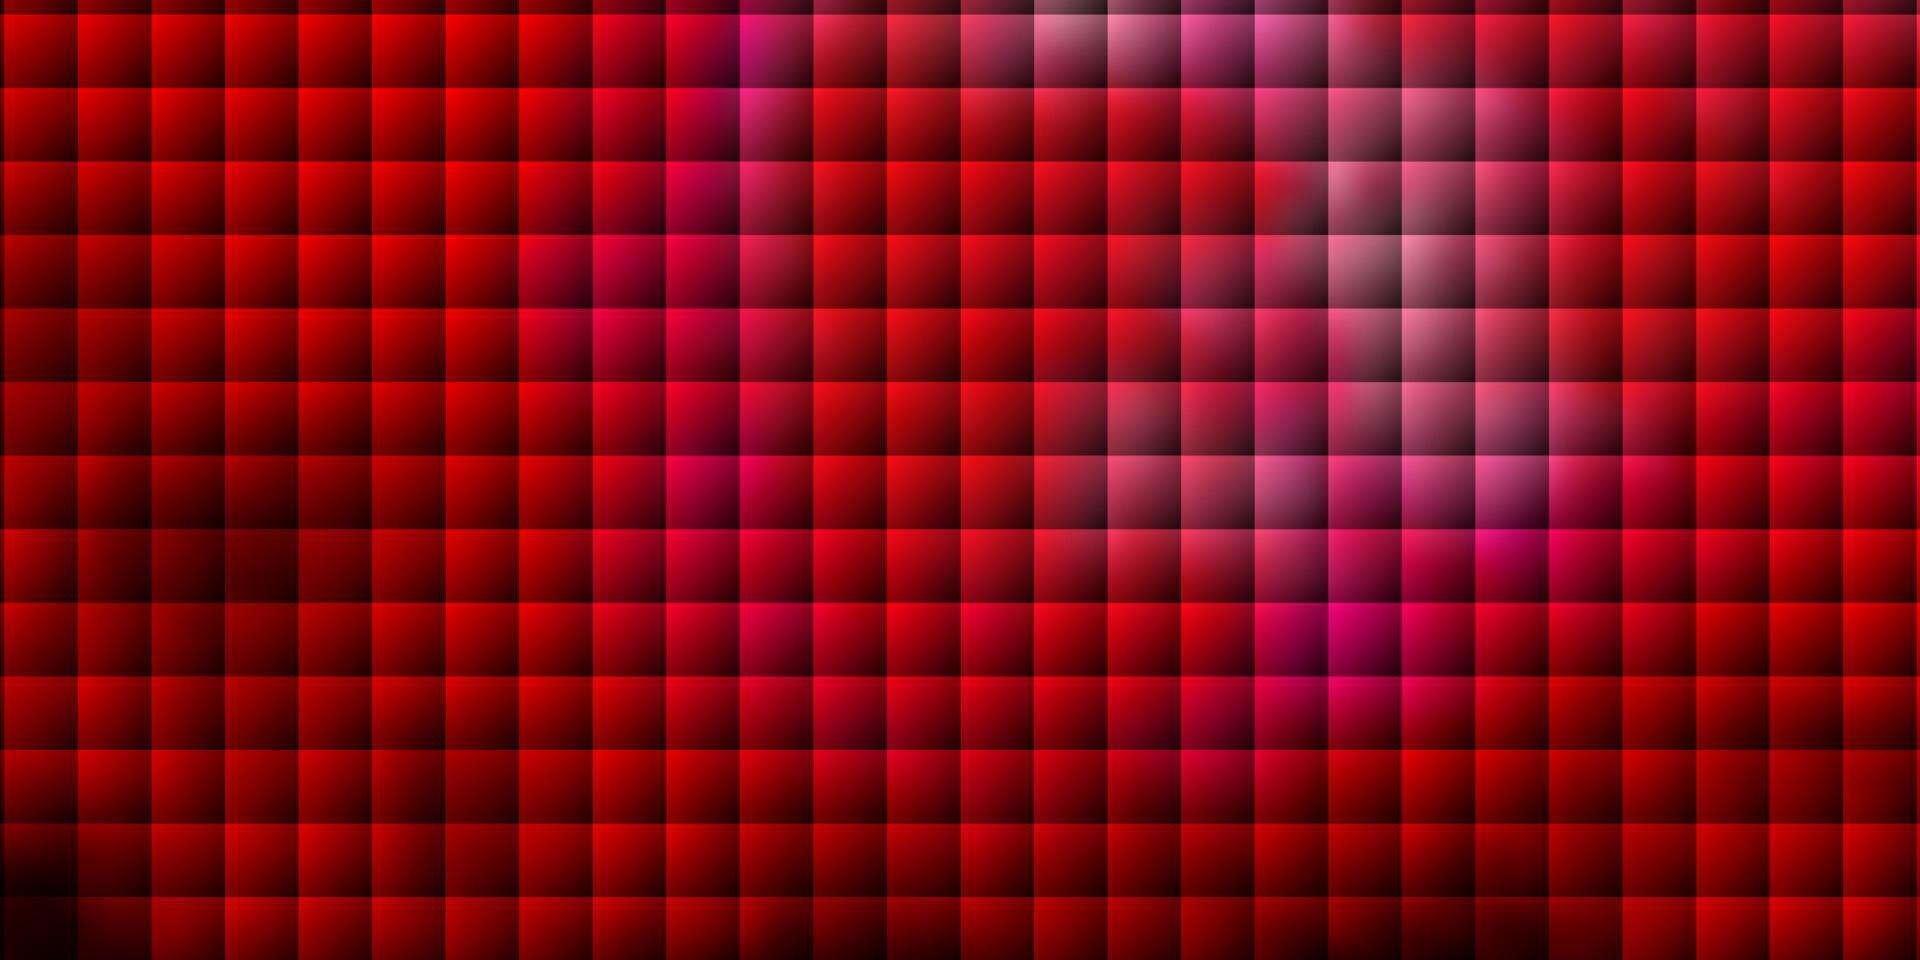 diseño de vector de color rosa oscuro, rojo con líneas, rectángulos.